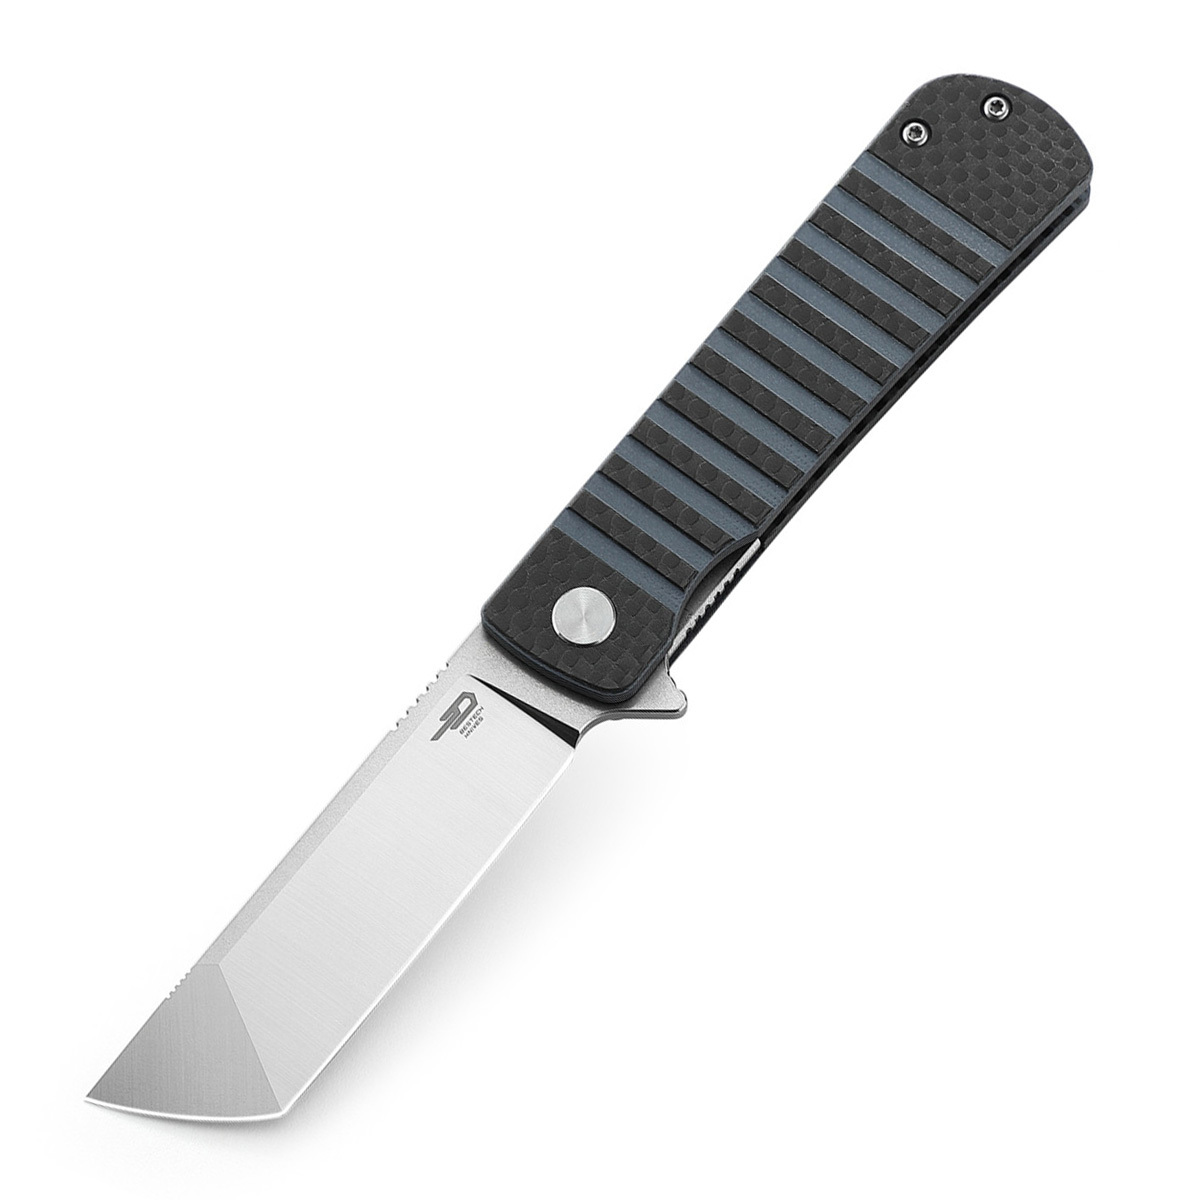 Складной нож Bestech Titan, сталь 154CM, рукоять черно-синяя G10/карбон складной нож bestech swift сталь d2 micarta